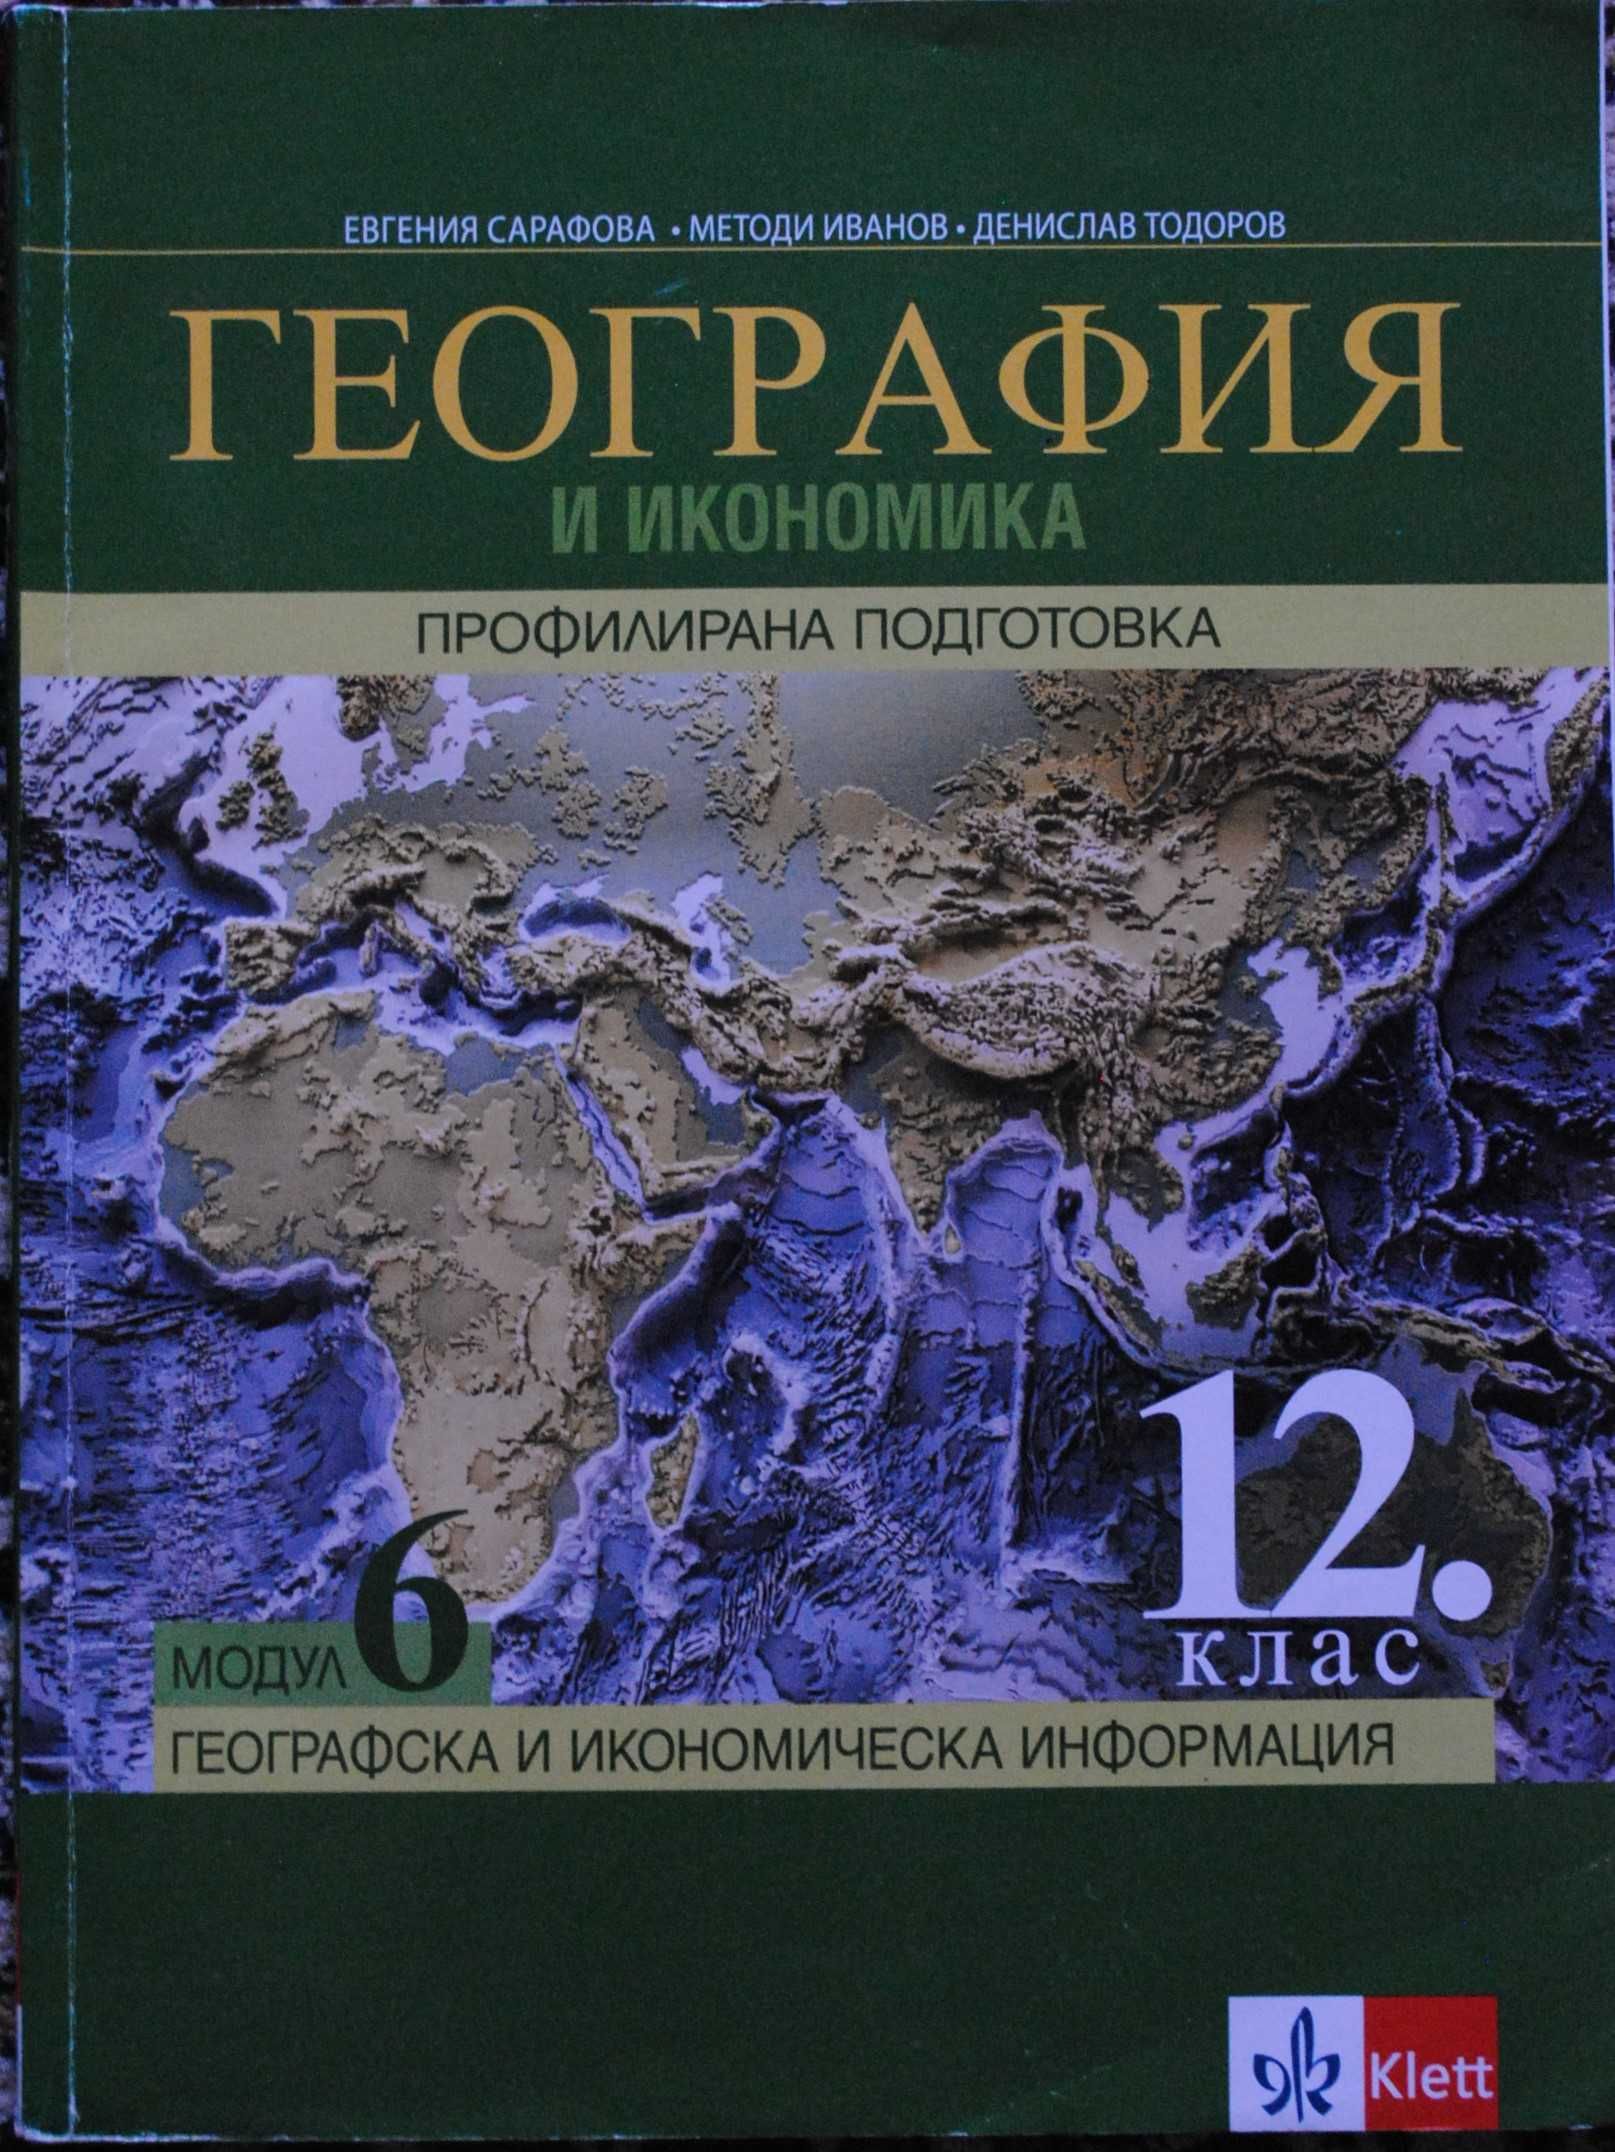 Учебници по модул География и Икономика, модул 5 и 6